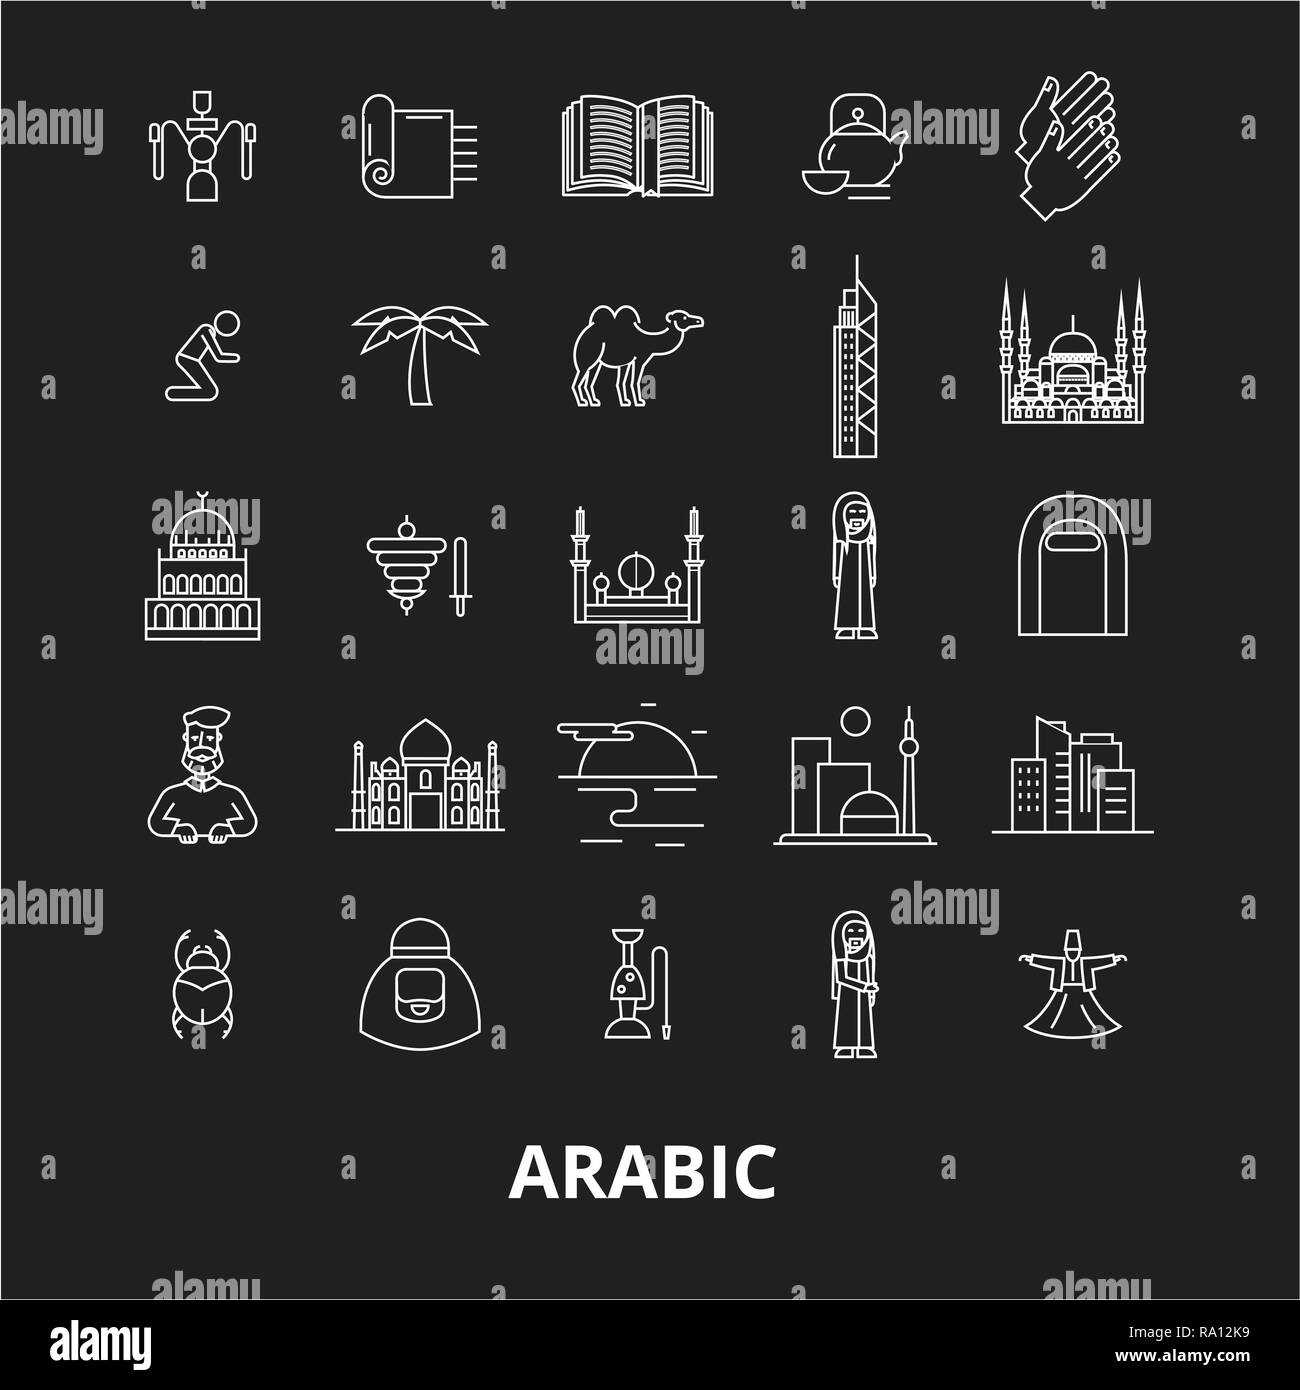 Arabisch bearbeitbare Zeile Symbole Vektor auf schwarzen Hintergrund. Arabisch weißer Umriss Abbildungen, Zeichen, Symbole Stock Vektor